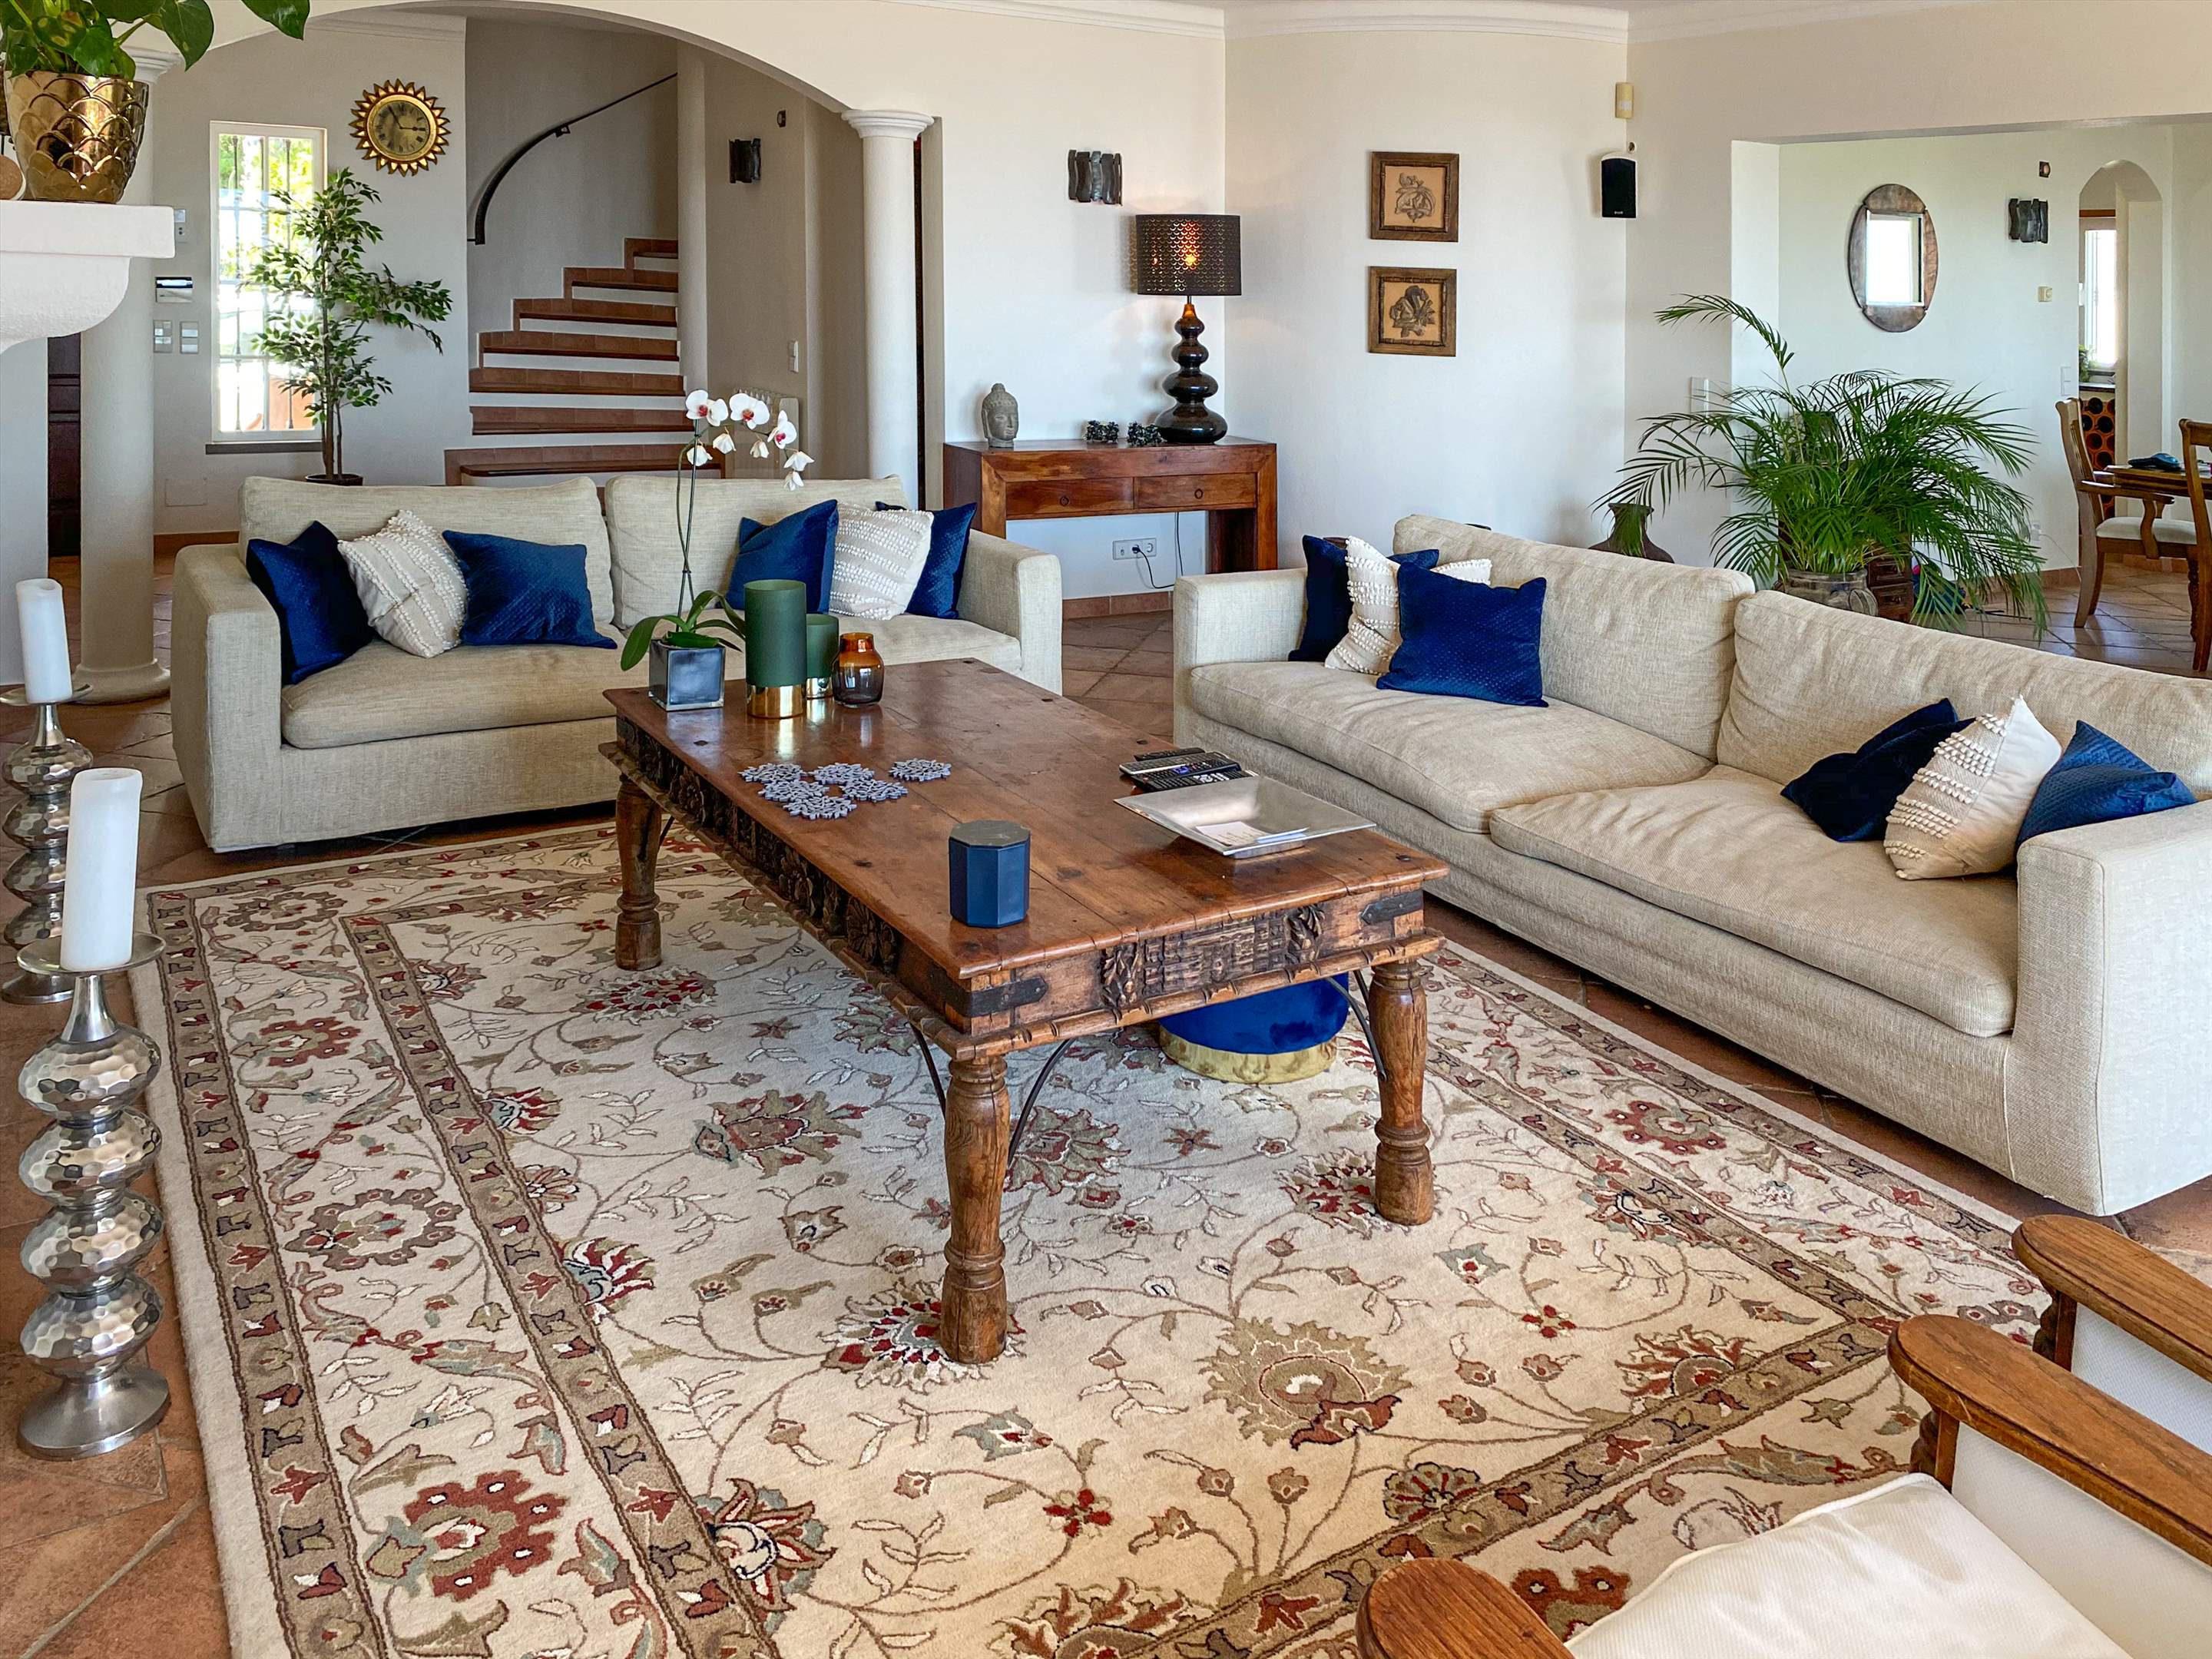 Villa Netuno, 12 Persons Rate, 2 extra persons on sofa bed, 5 bedroom villa in Algarve Countryside, Algarve Photo #13